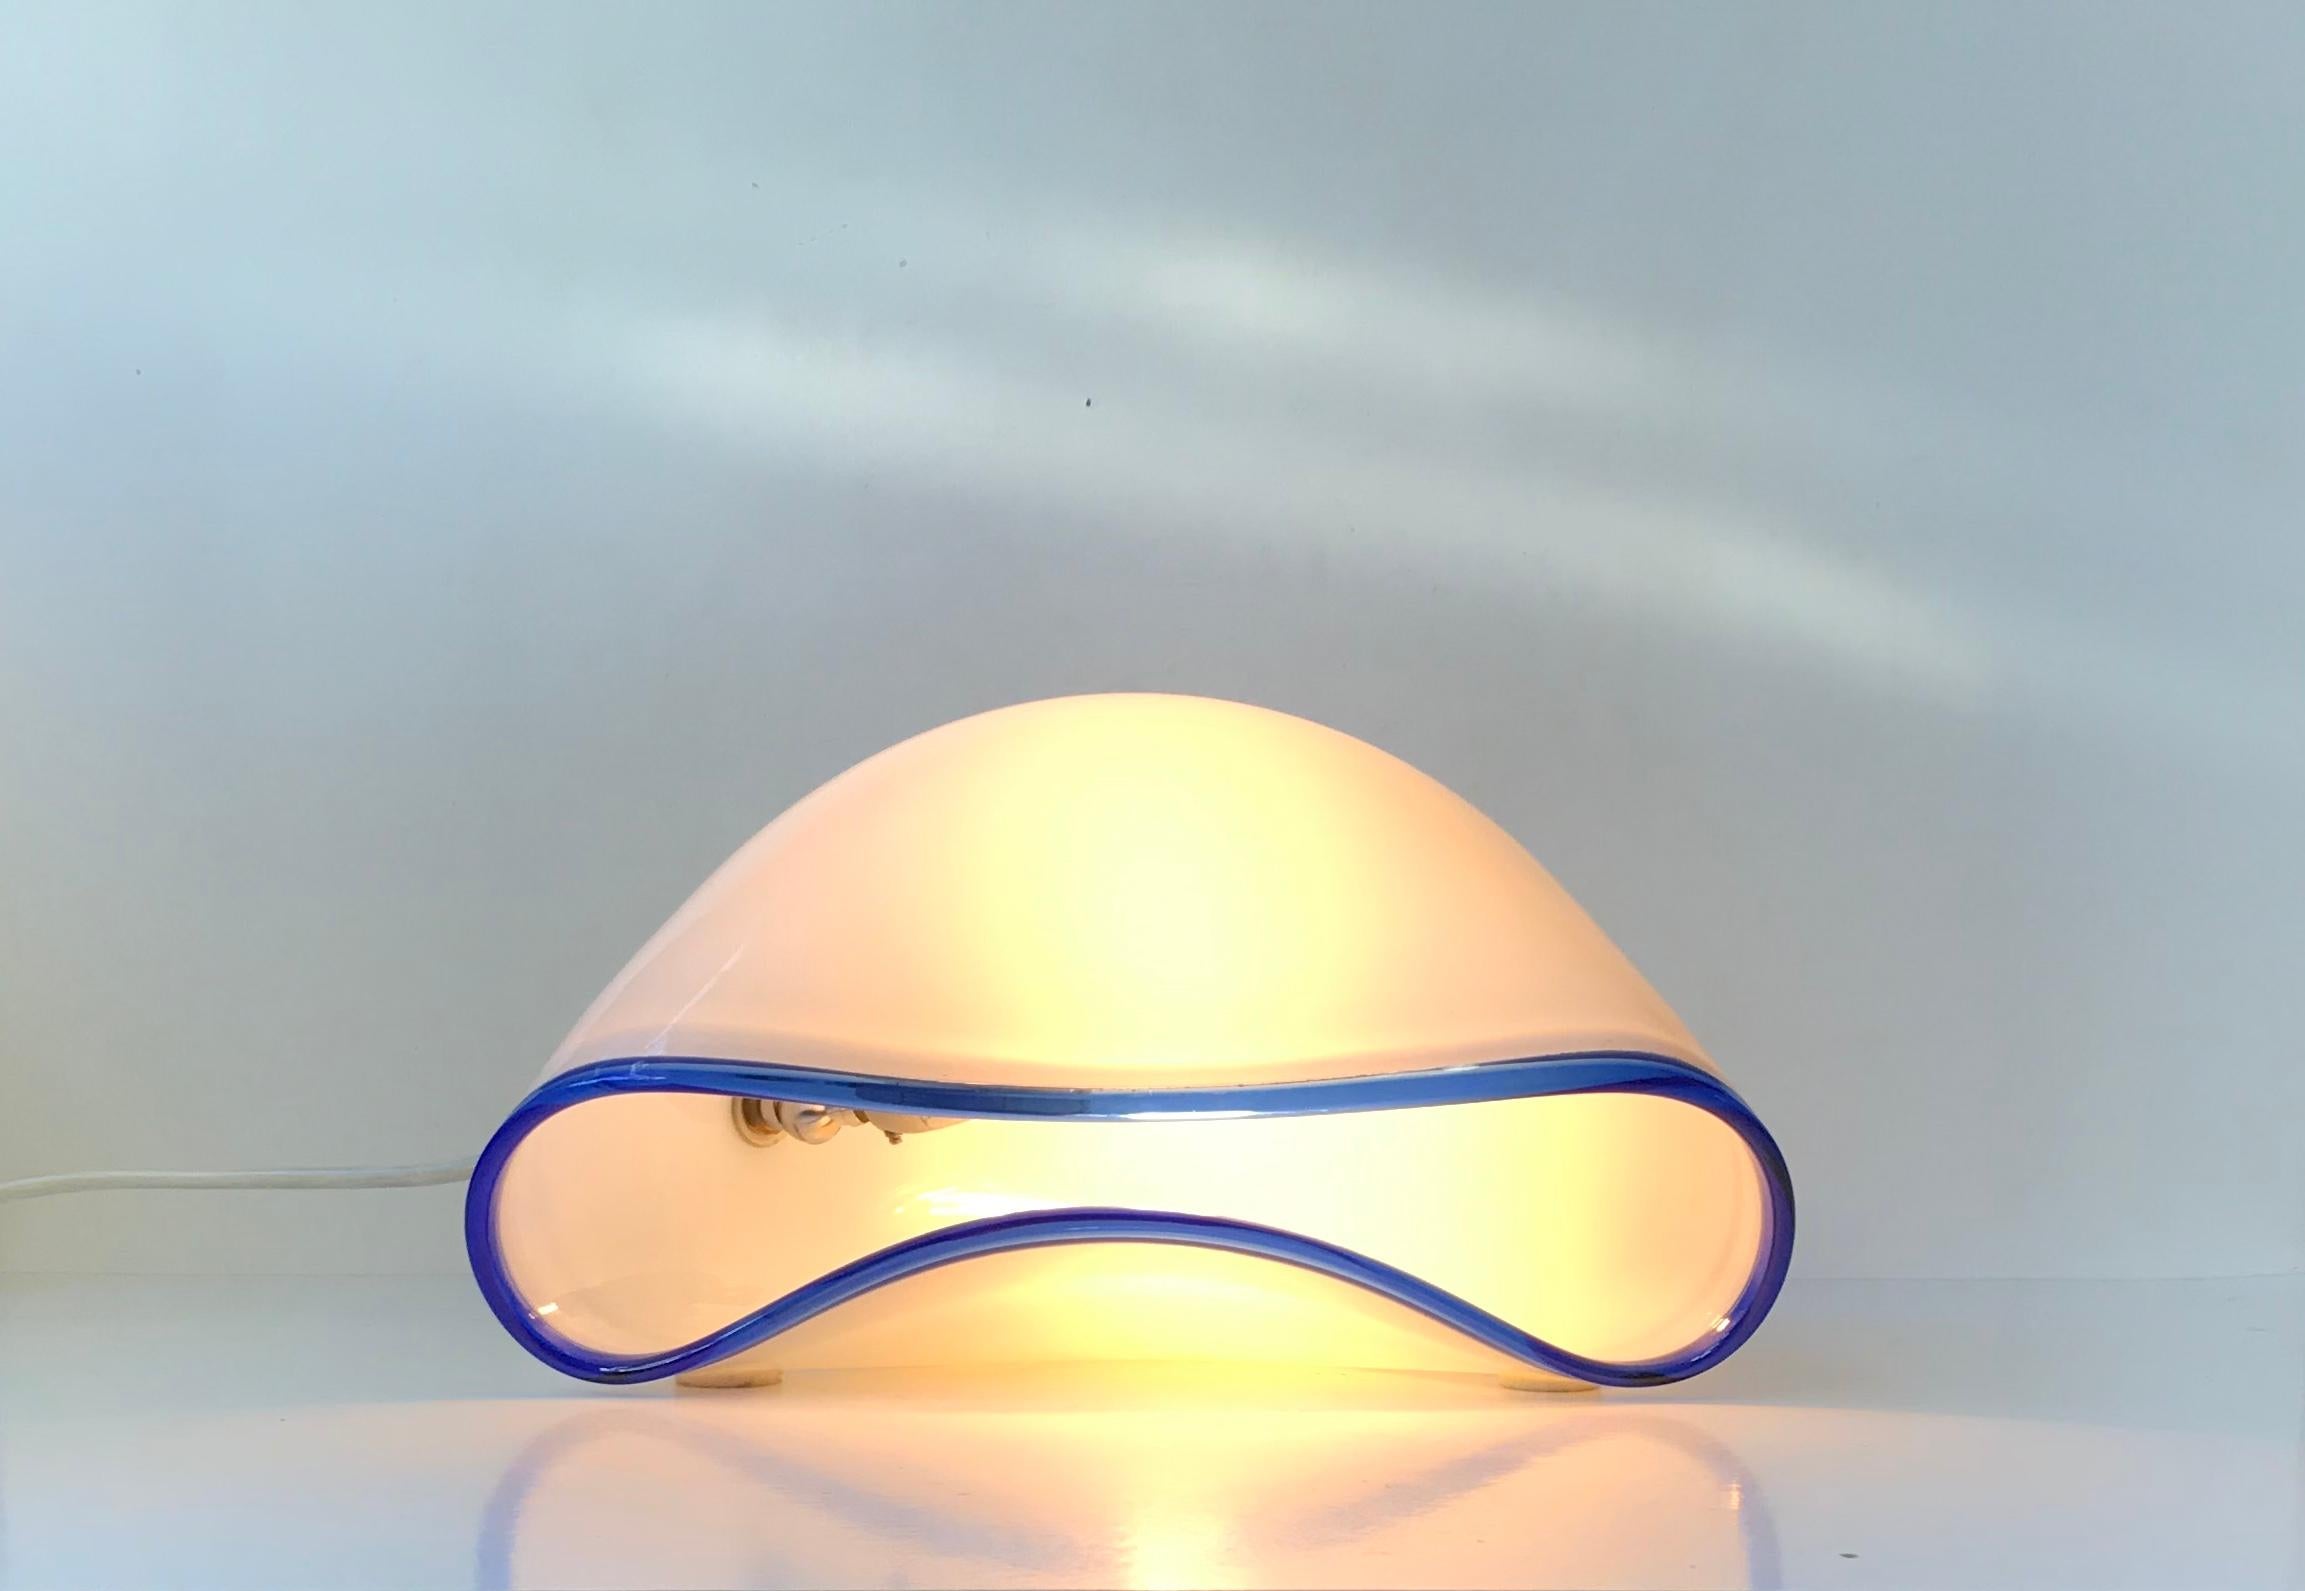 De forme biomorphique, cette lampe de table inhabituelle appelée 